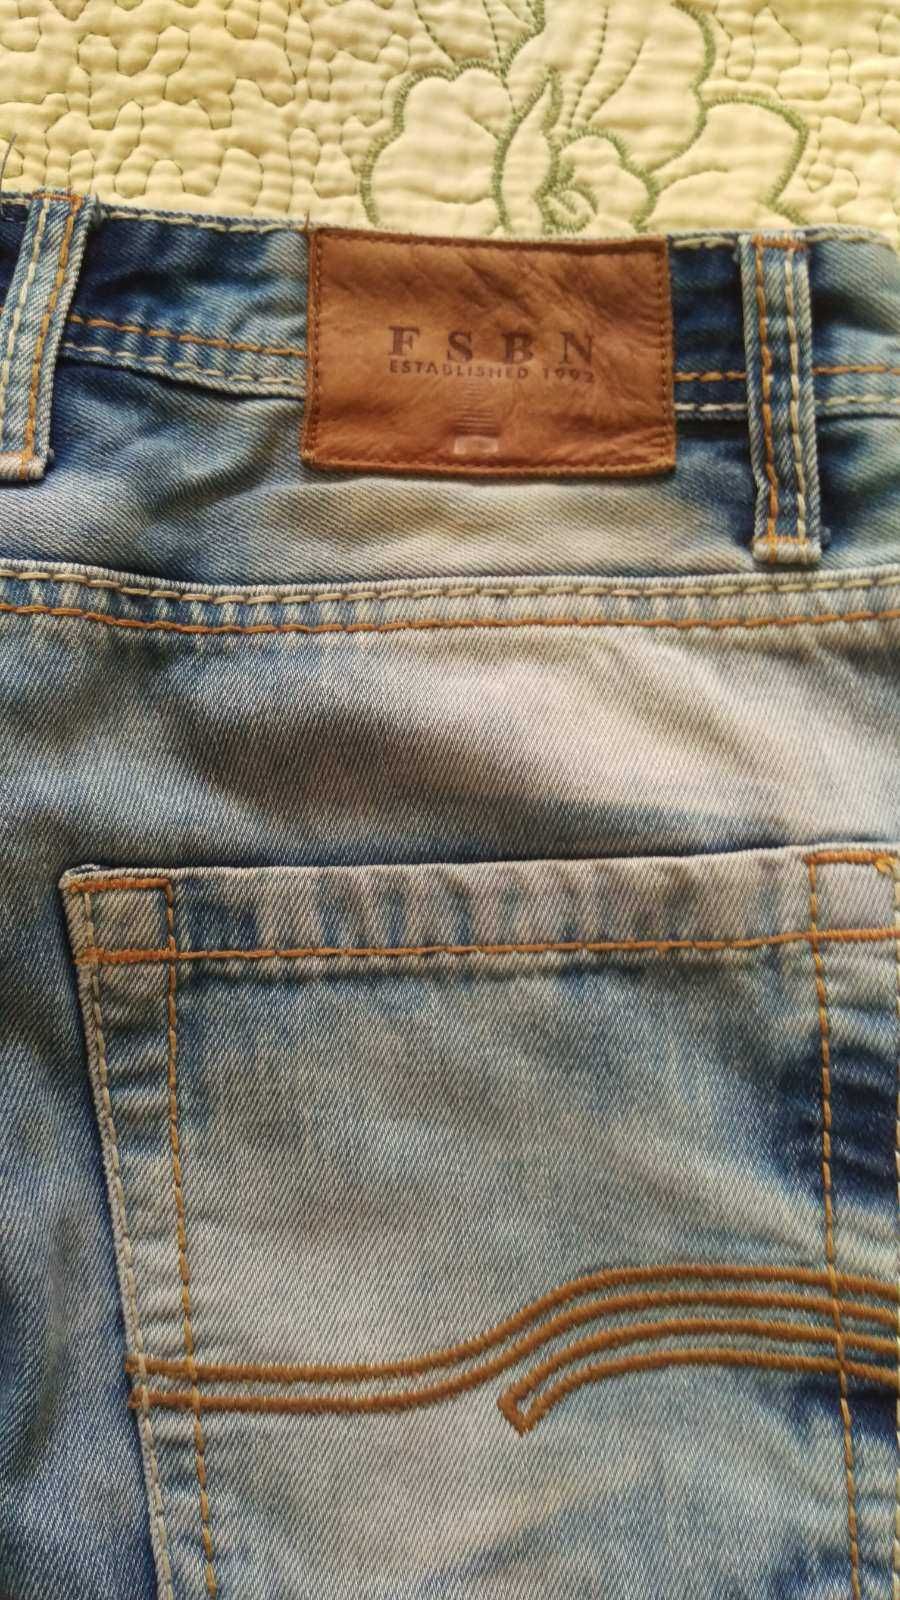 шорты джинсовые подросток состояние новых,хлопок размер 44 или S